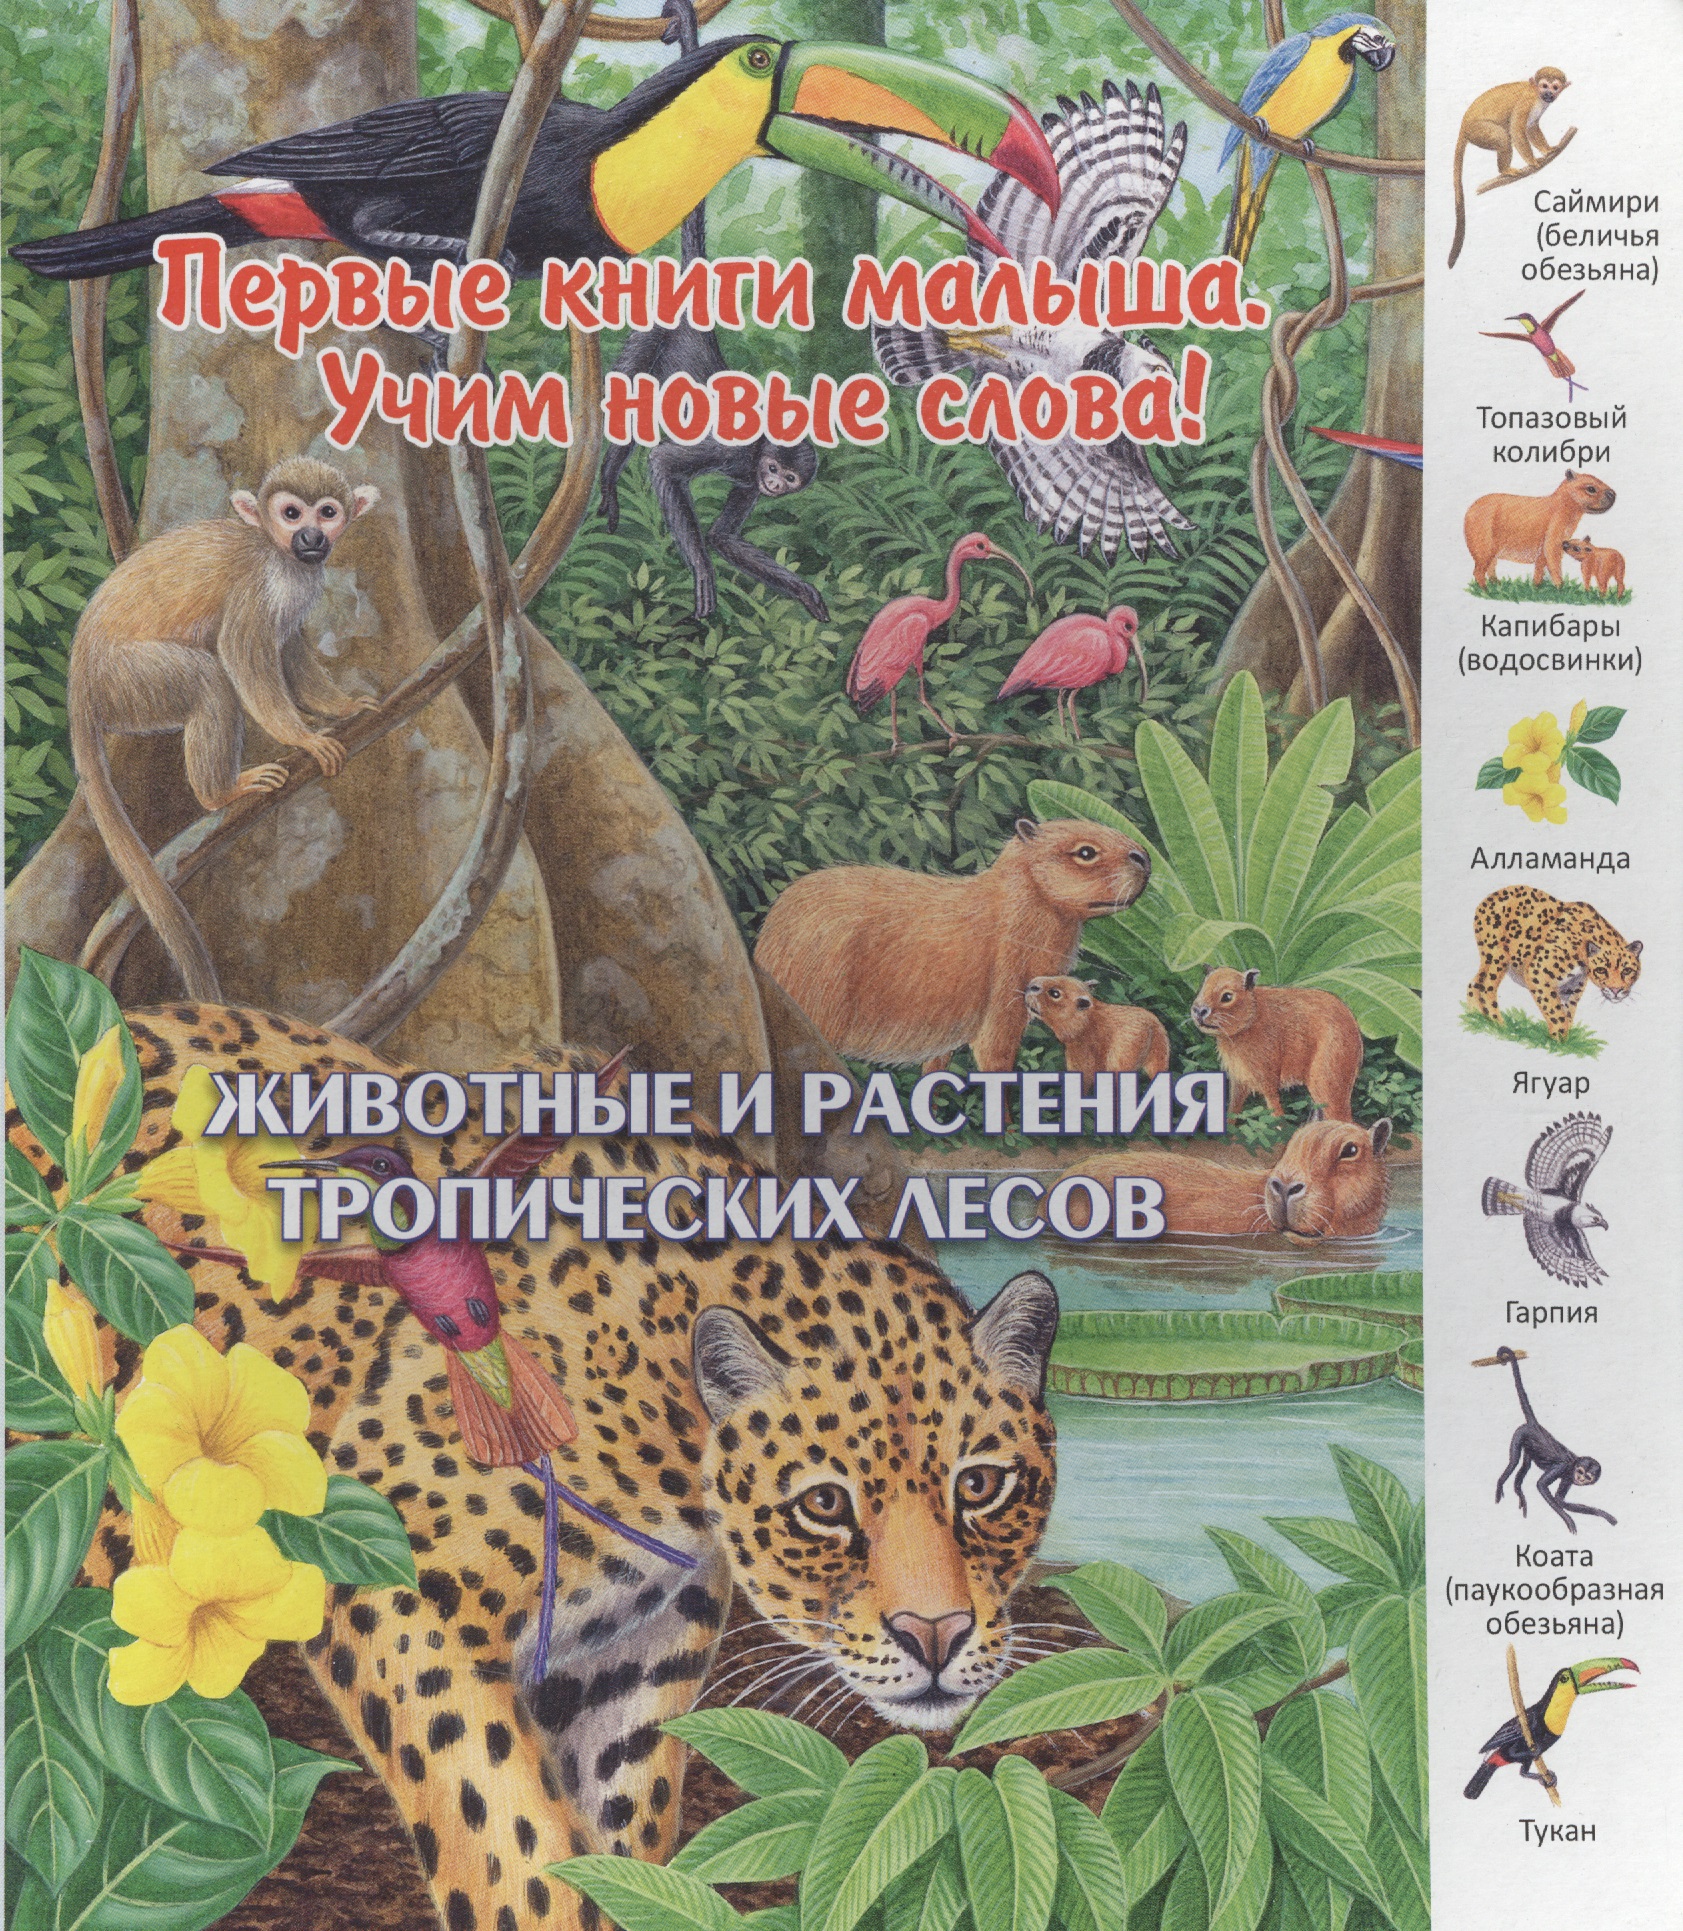 Животные и растения тропических лесов (ПерКнМалУчНовСл) (картон) Комарова набор safari ltd животные влажных тропических лесов